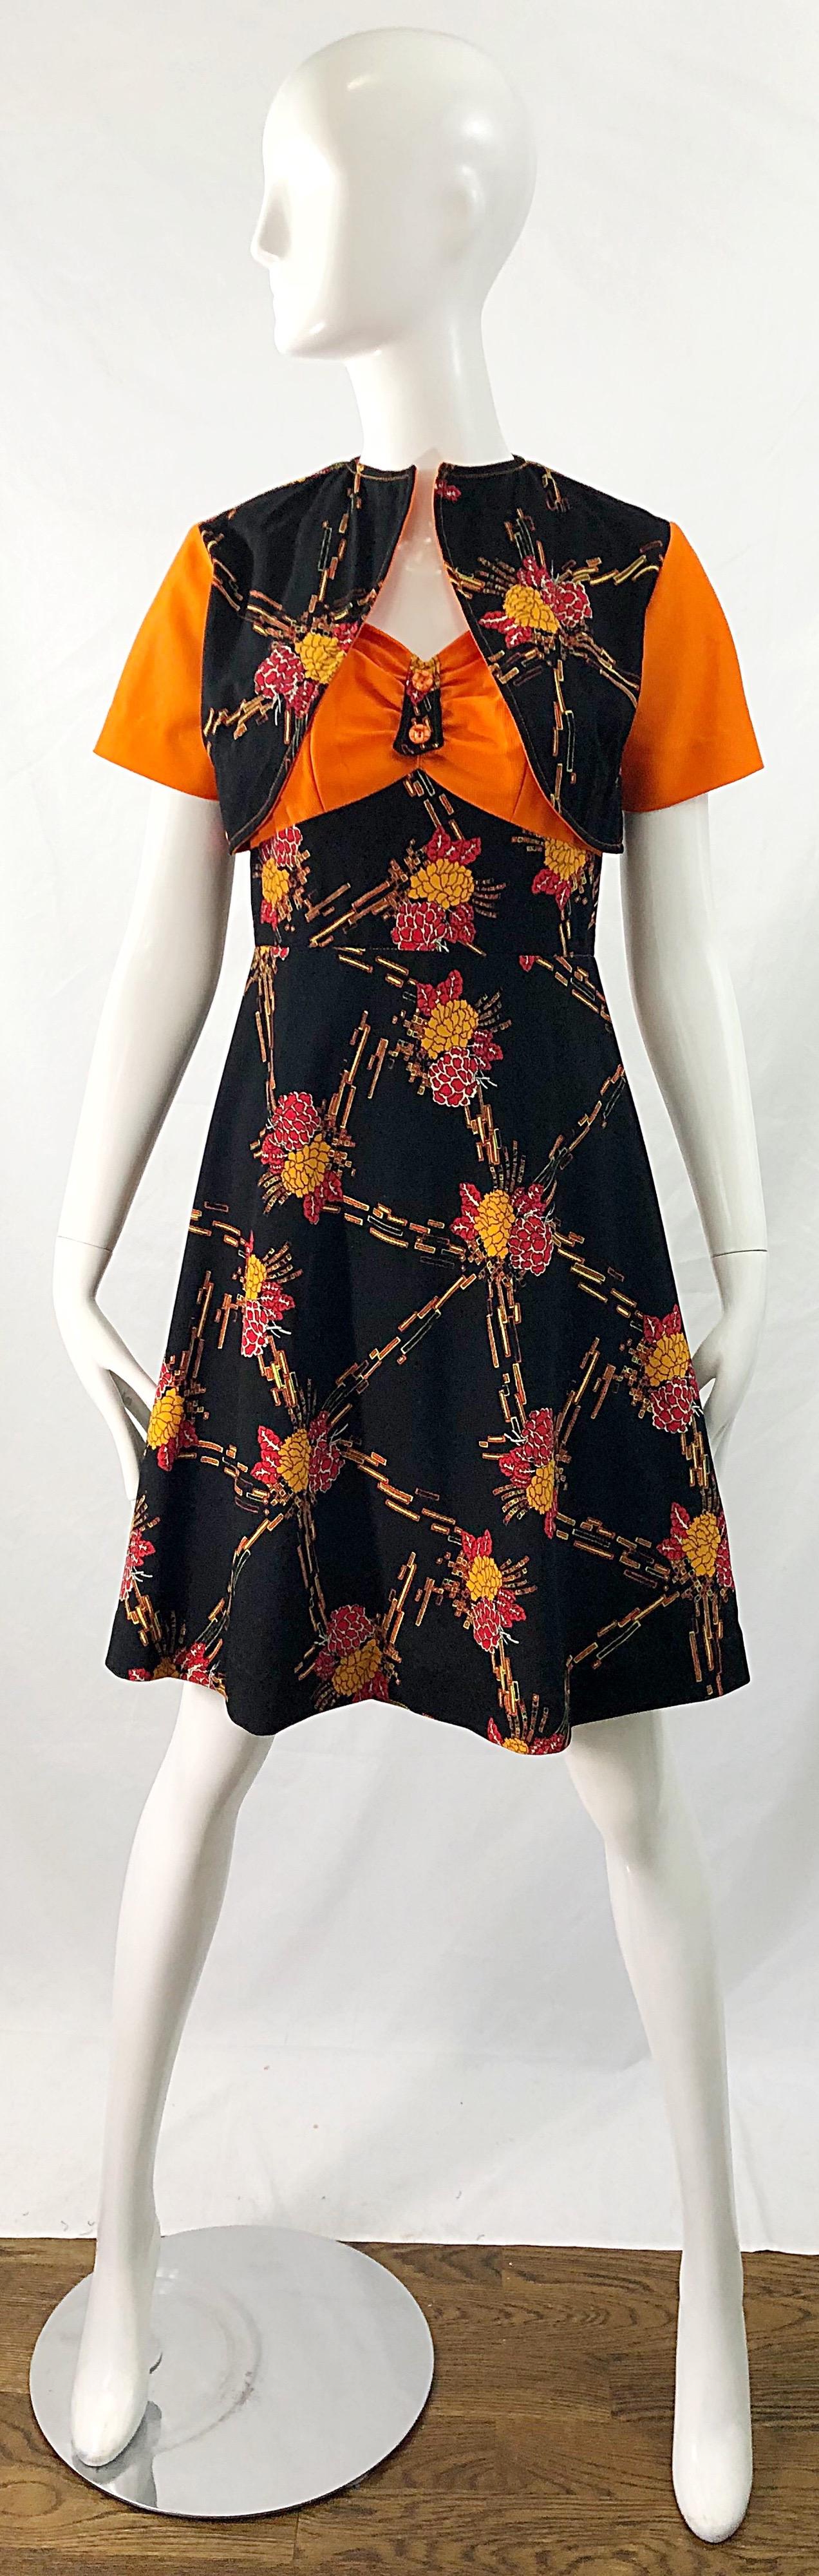 Schickes, herbstlich gefärbtes 1970er Jahre Kleid mit digitalem Blumendruck in A-Linie und Bolero-Jacke! Perfekt für Halloween! Warme, lebendige Farben wie Orange, Ringelblume, Rot und Weiß auf einem schwarzen Hintergrund. Verdeckter Reißverschluss